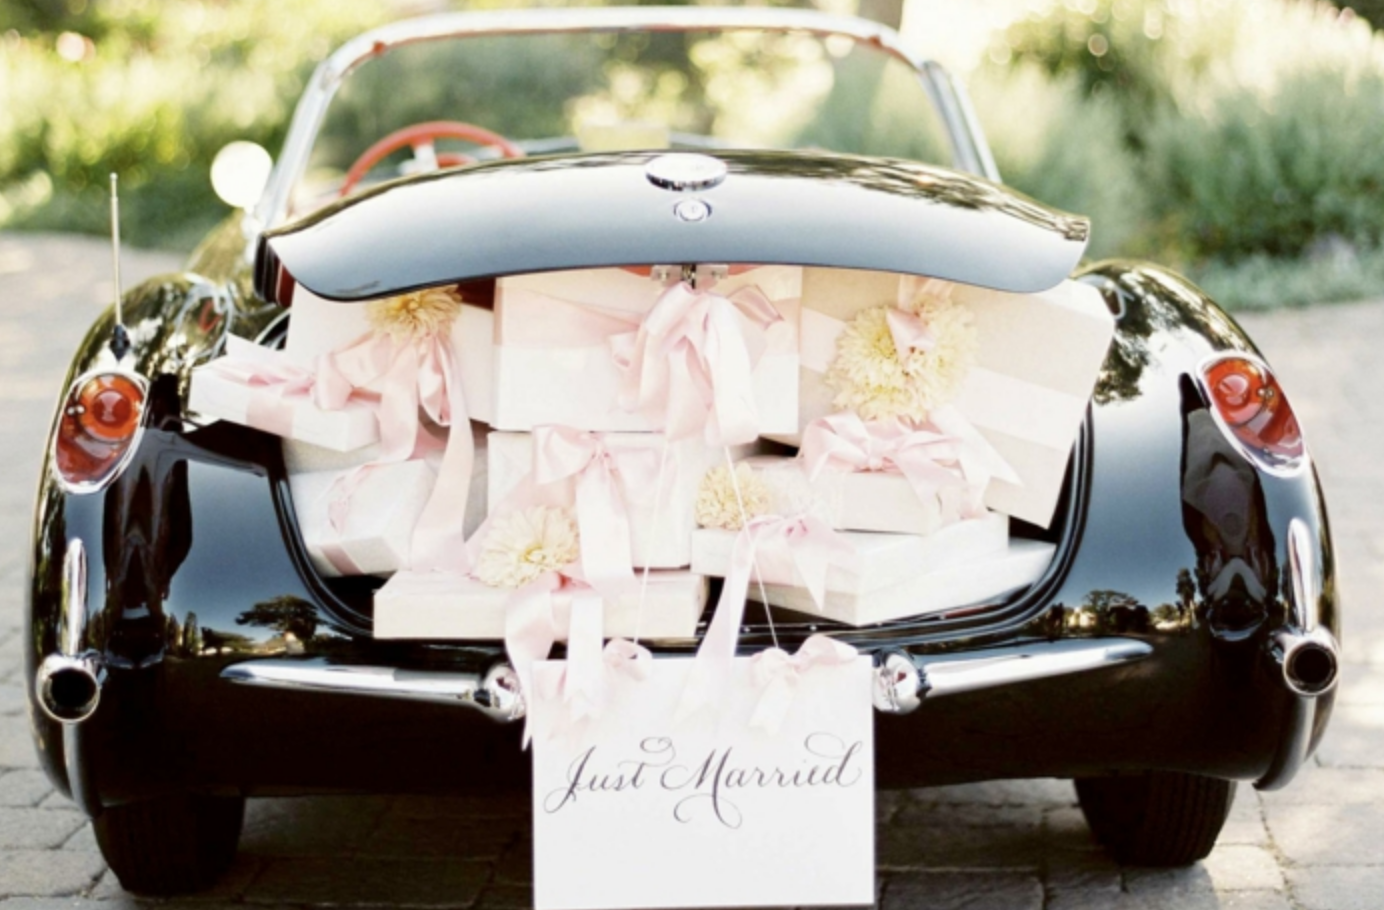 Décoration voiture mariage just married - 10 jolies façons de